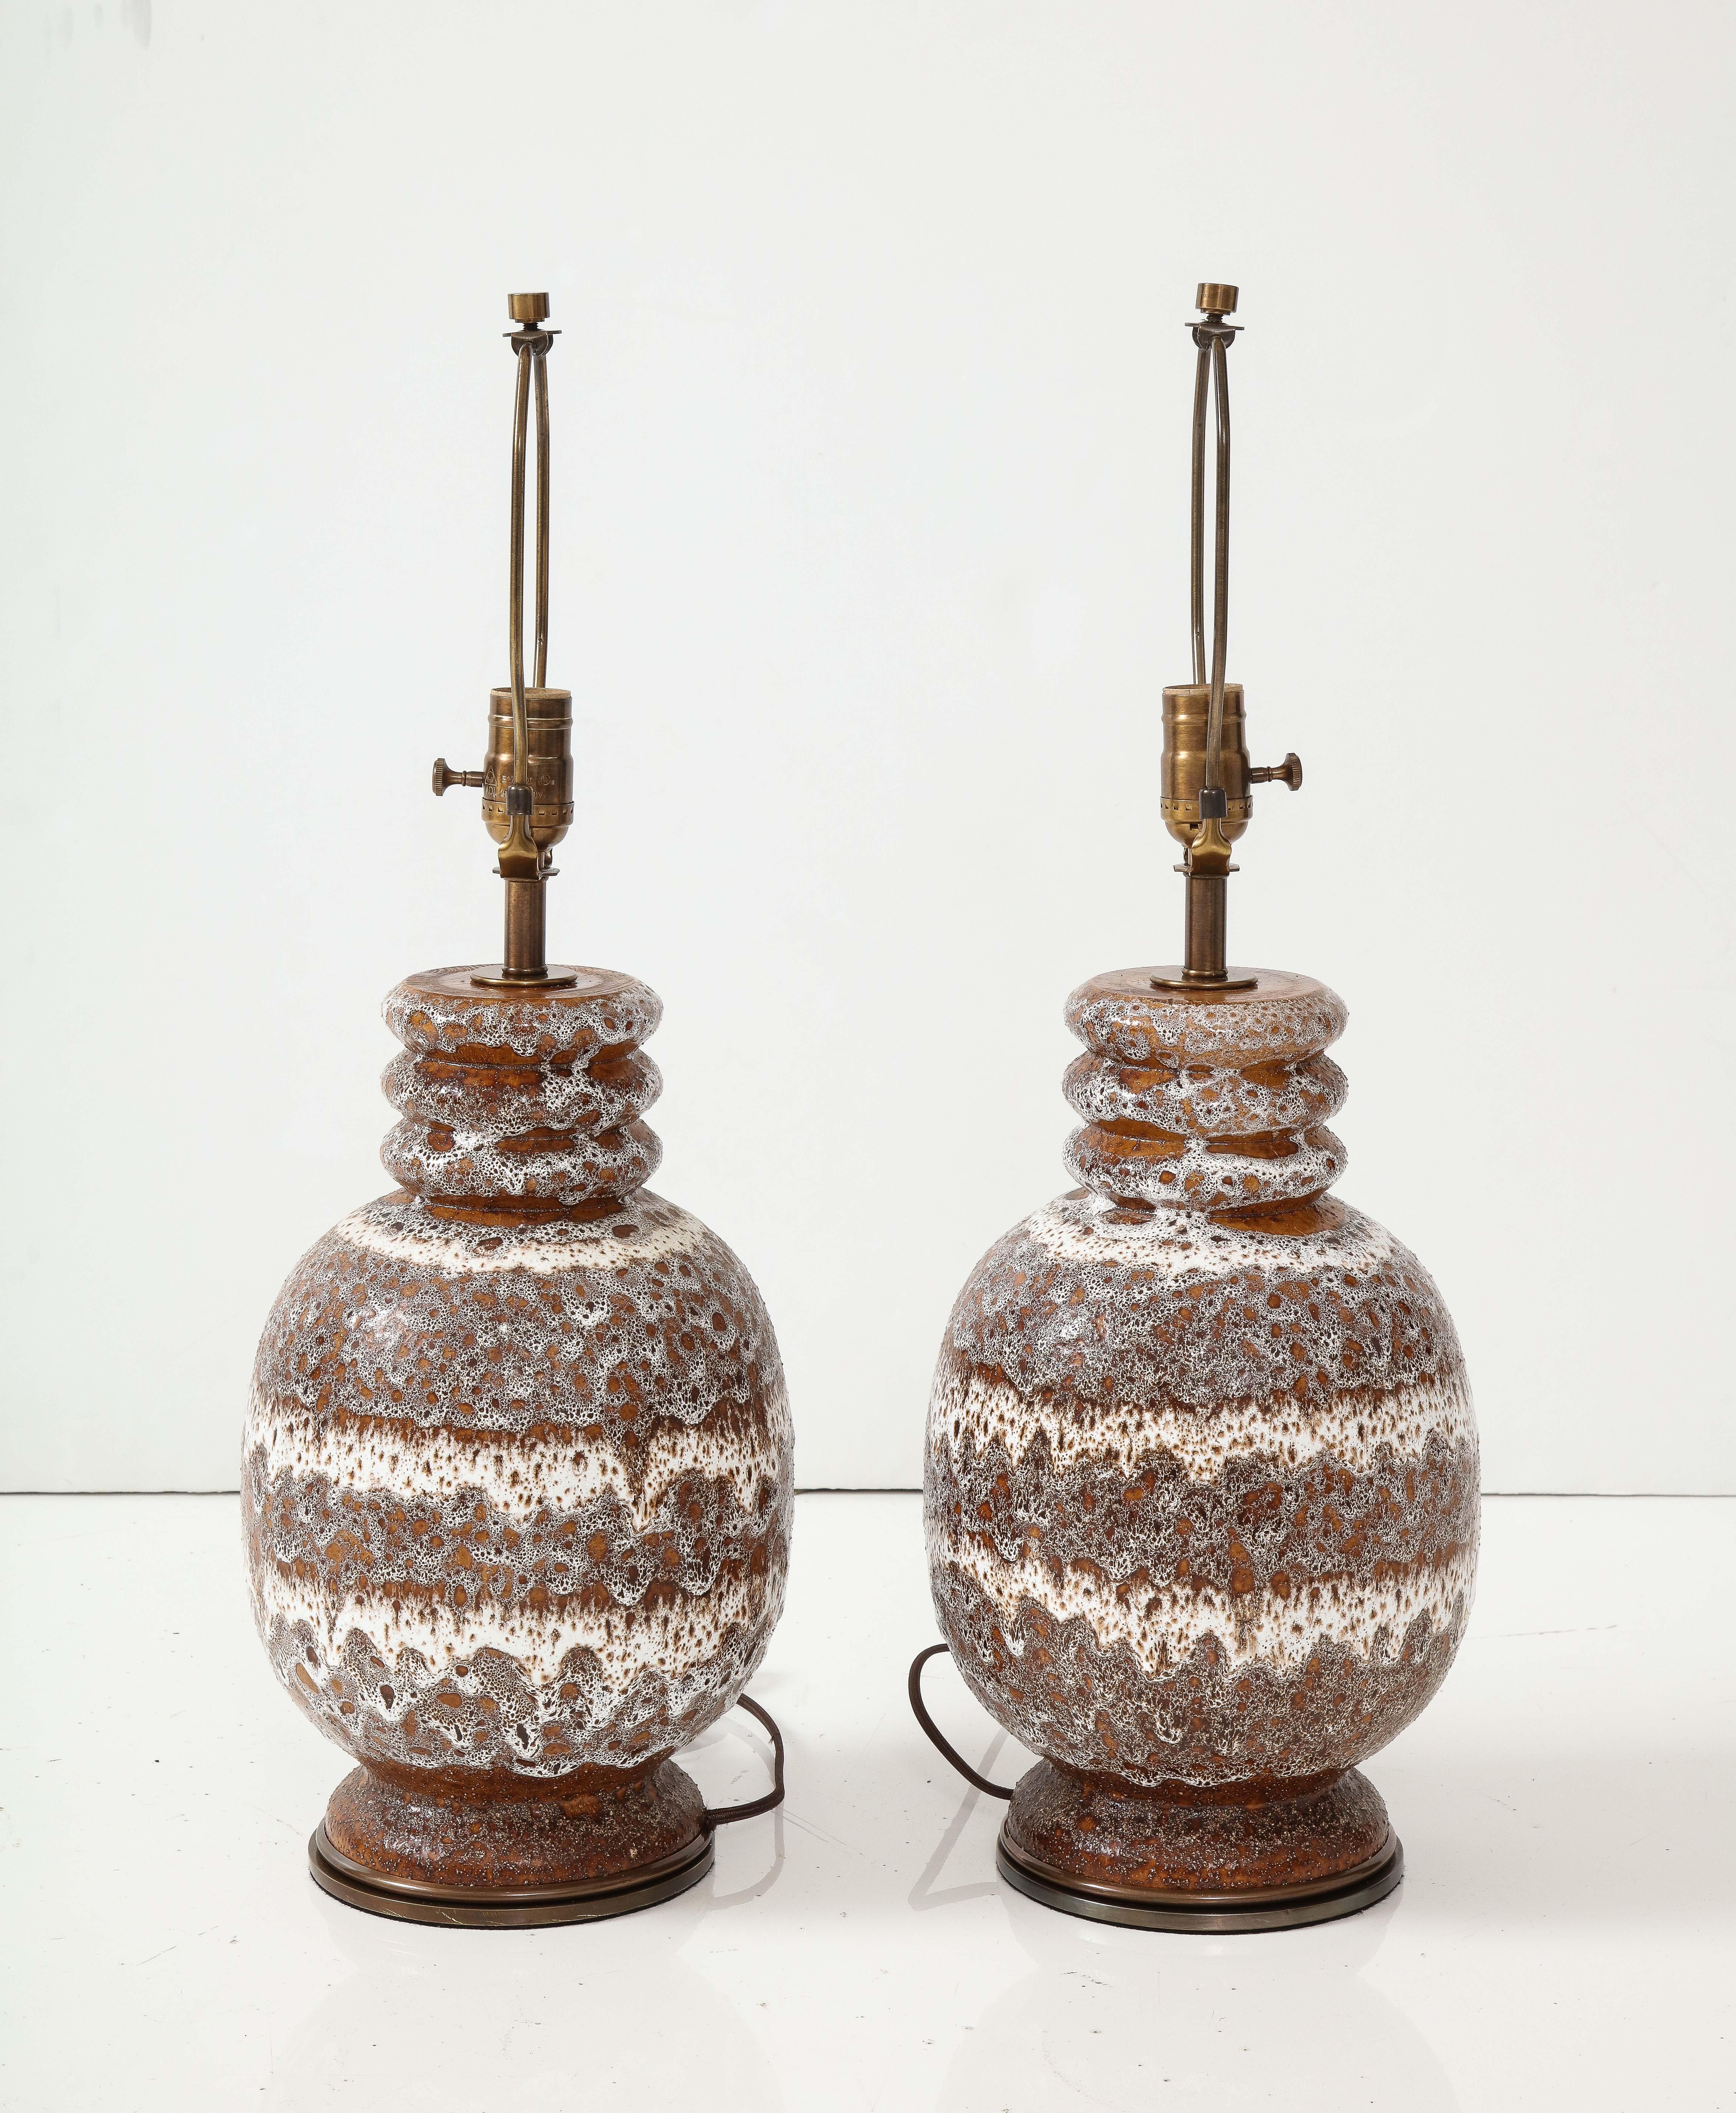 Ein Paar westdeutsche Lampen aus vulkanischer Keramik auf gealterten Bronzesockeln. Umverdrahtet für den Einsatz in den USA, Glühbirnen max. 100 W.